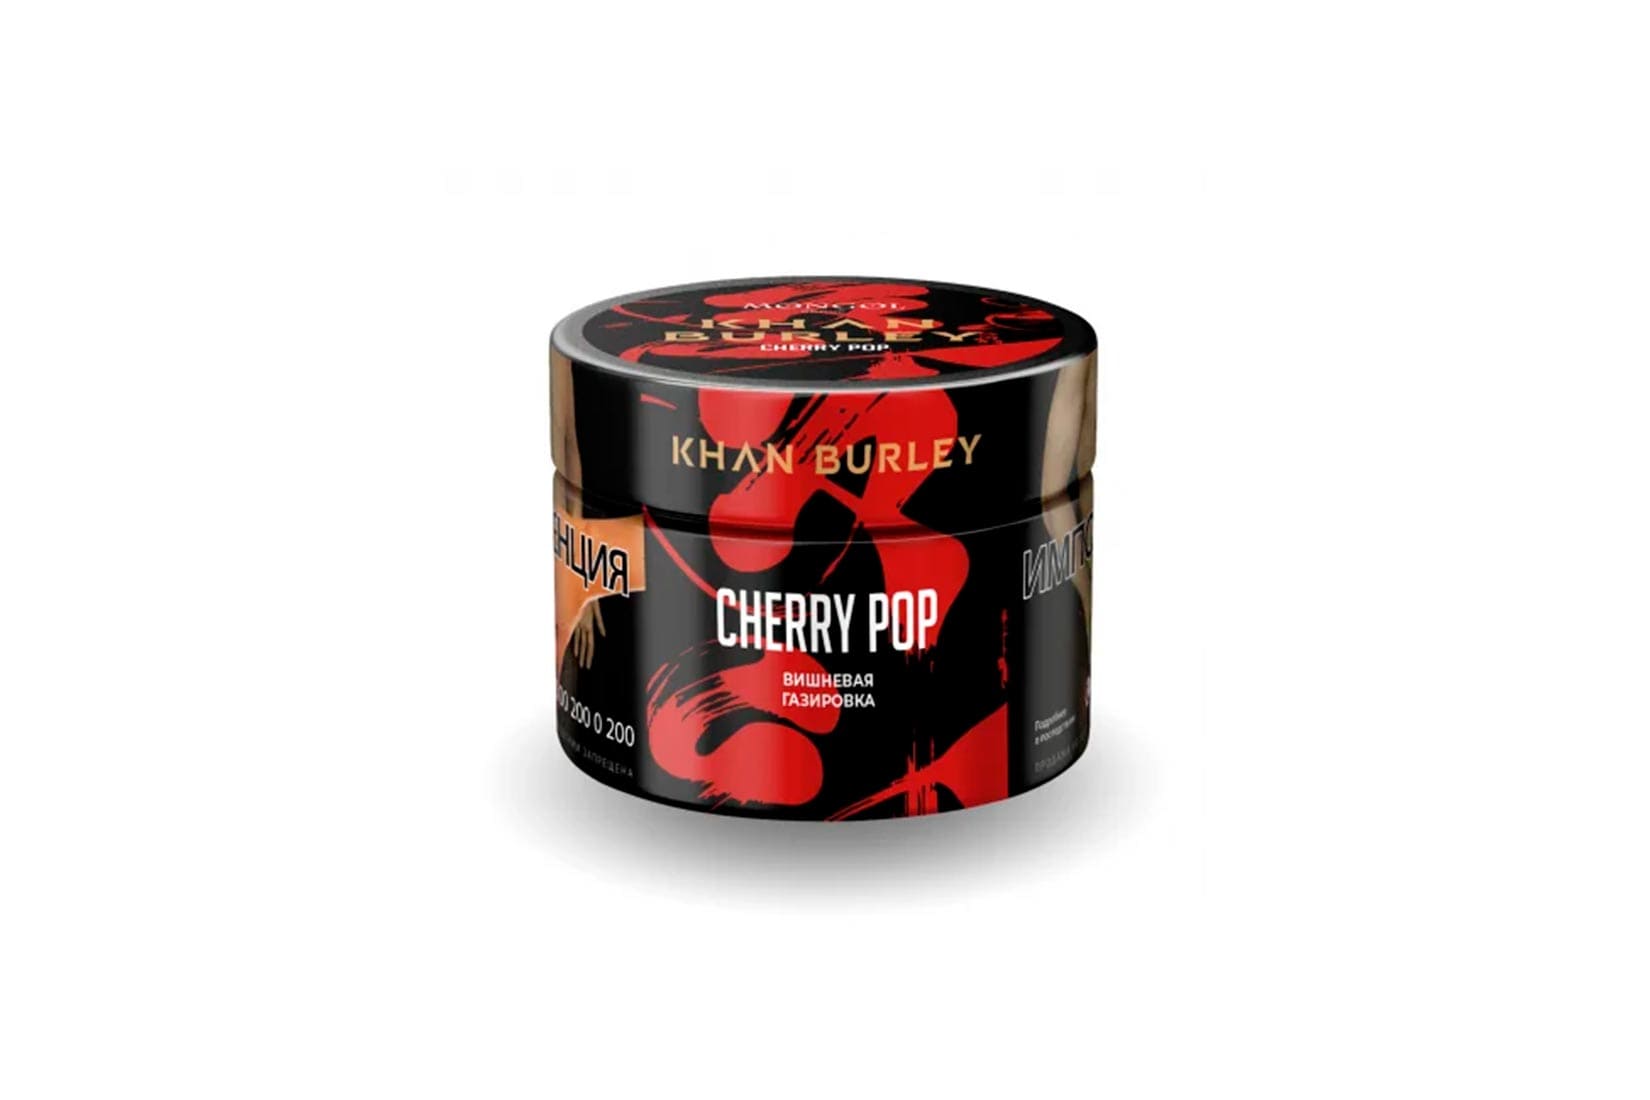 Табак для кальяна Khan Burley — Cherry pop (Вишневая газировка)